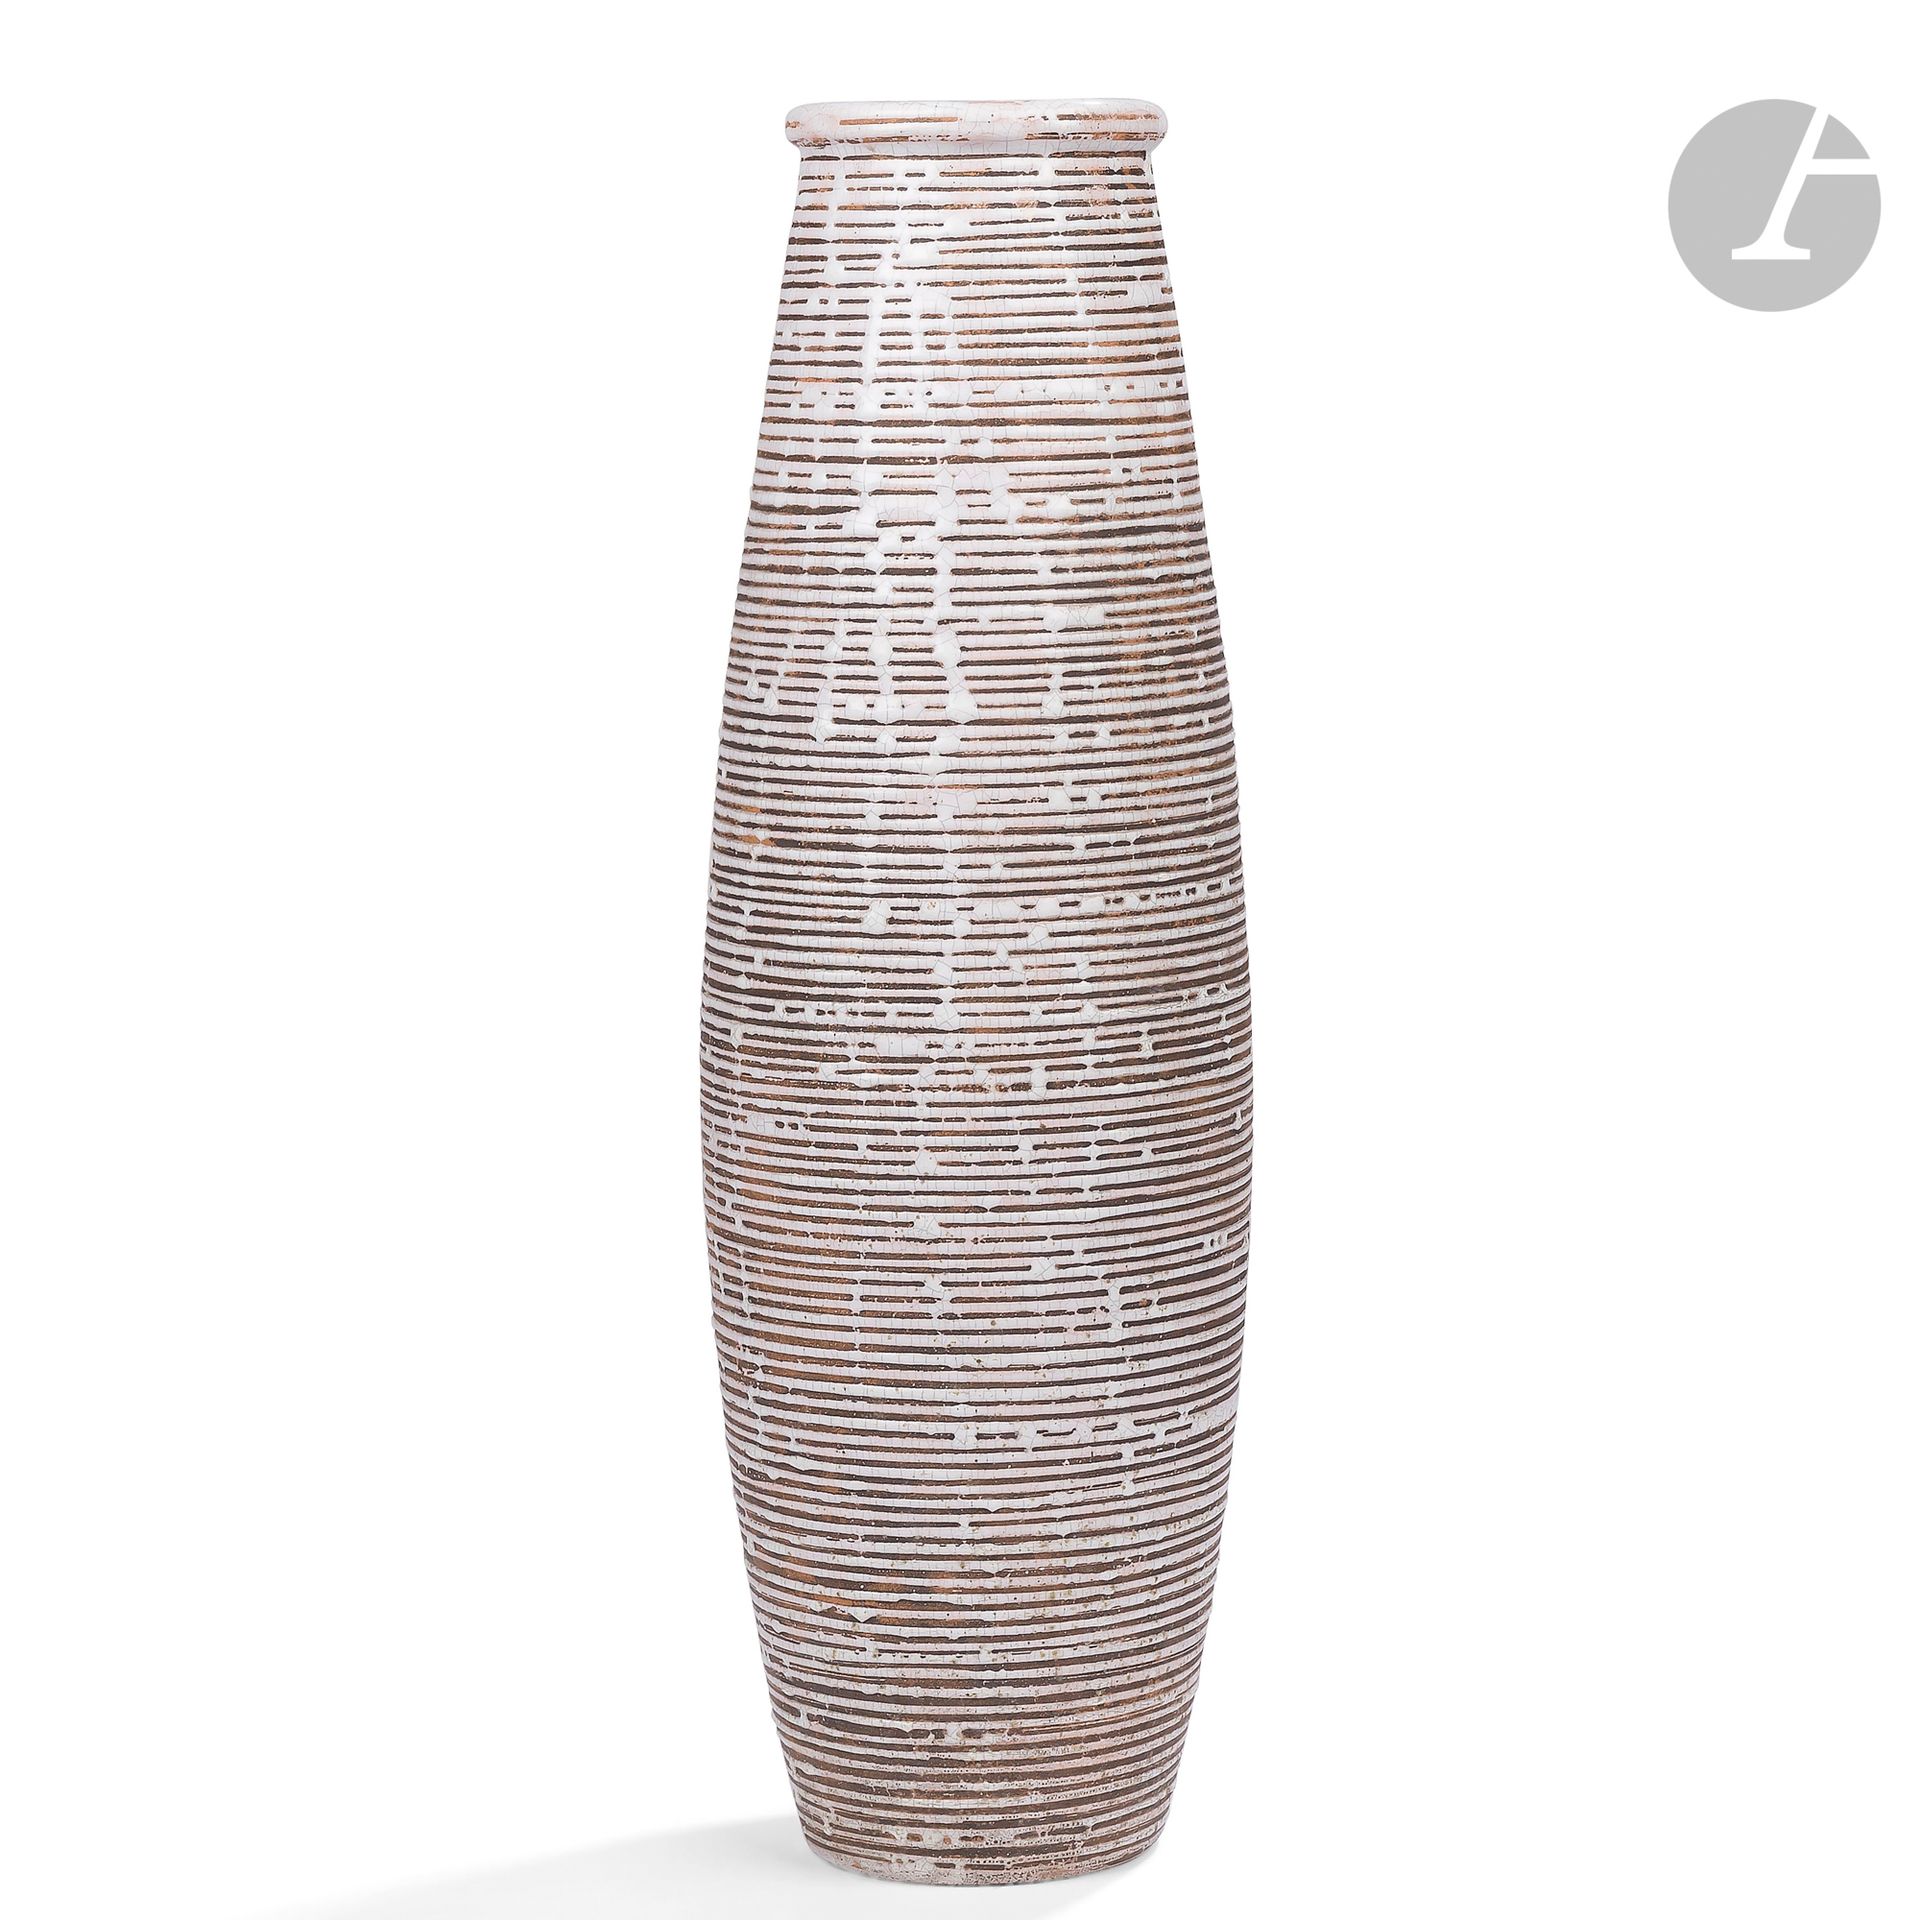 Null 春季艺术研讨会
叠加的圆圈
高大的，锥形的花瓶。
瓷器证明；设计的标题是预留的，在大地的基础上用裂纹白珐琅。
内部有裂纹的白色珐琅。
大约在1930年&hellip;